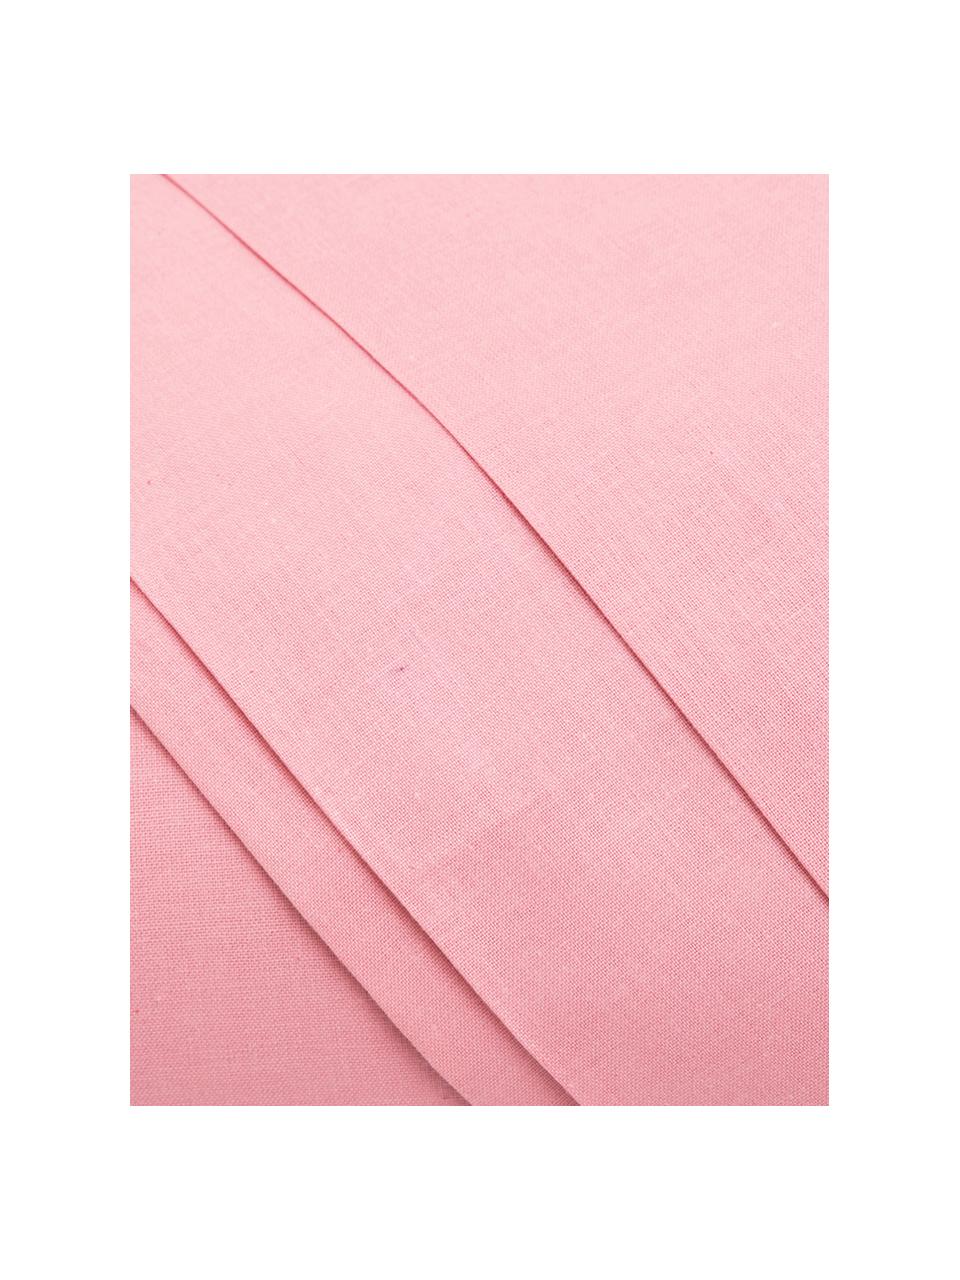 Set lenzuola in cotone rosa Lenare, Fronte e retro: rosa, 150 x 290 cm + 1 federa 50 x 80 cm